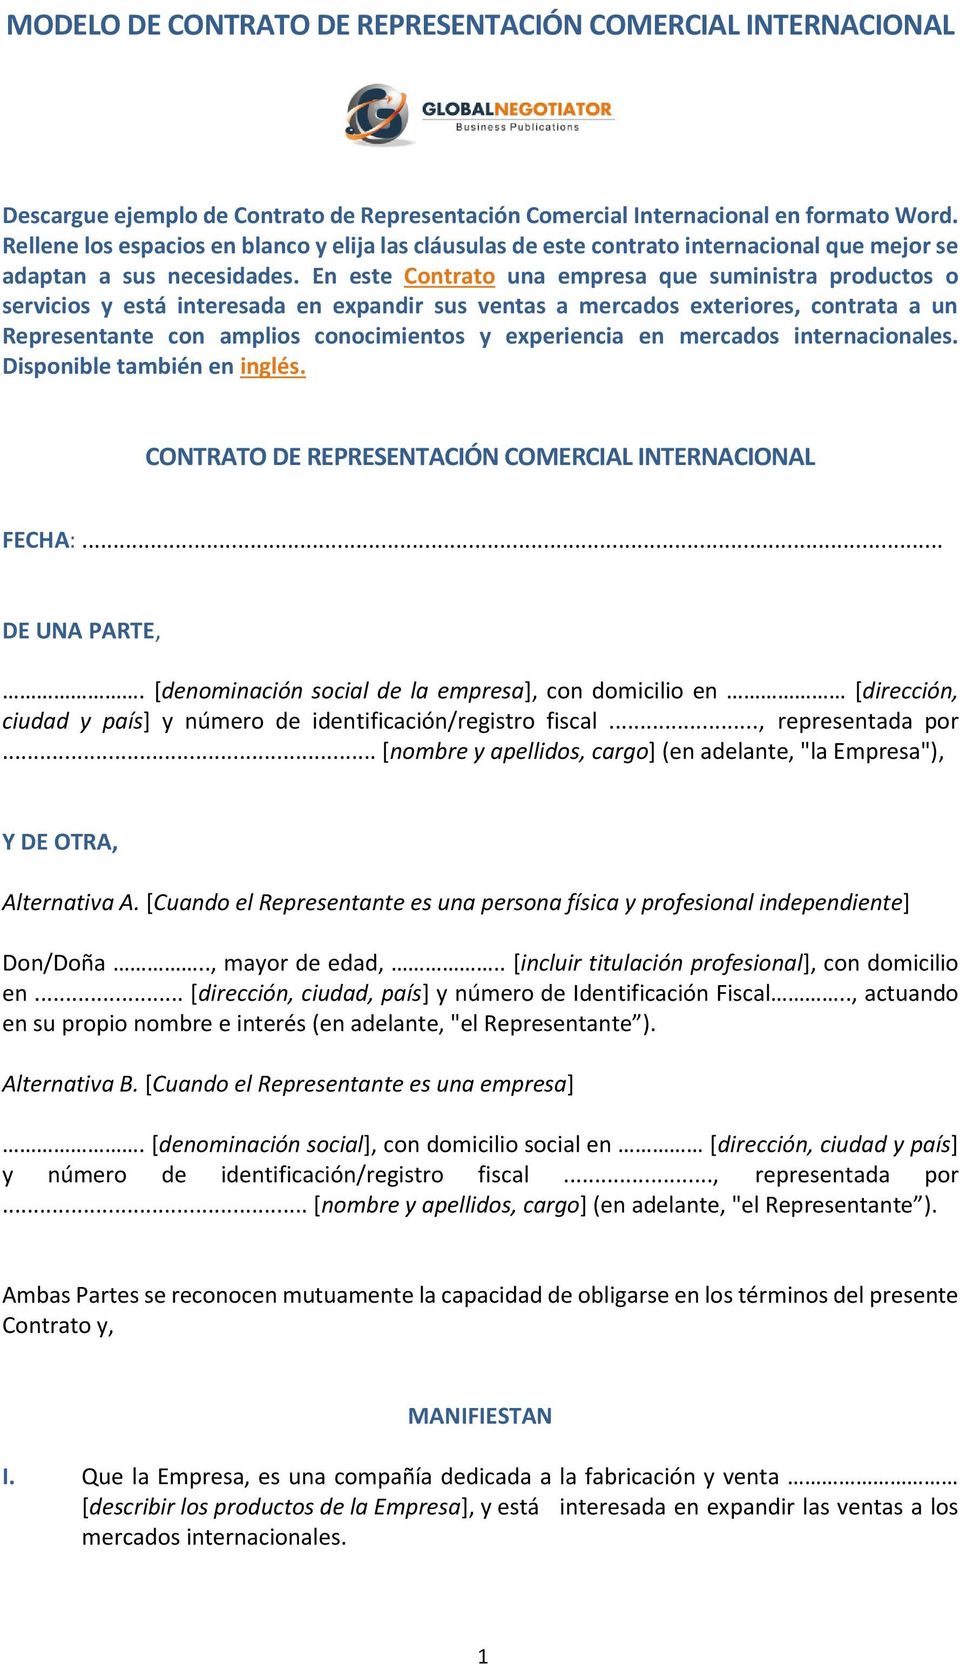 MODELO DE CONTRATO DE REPRESENTACIÓN COMERCIAL INTERNACIONAL - PDF  Descargar libre